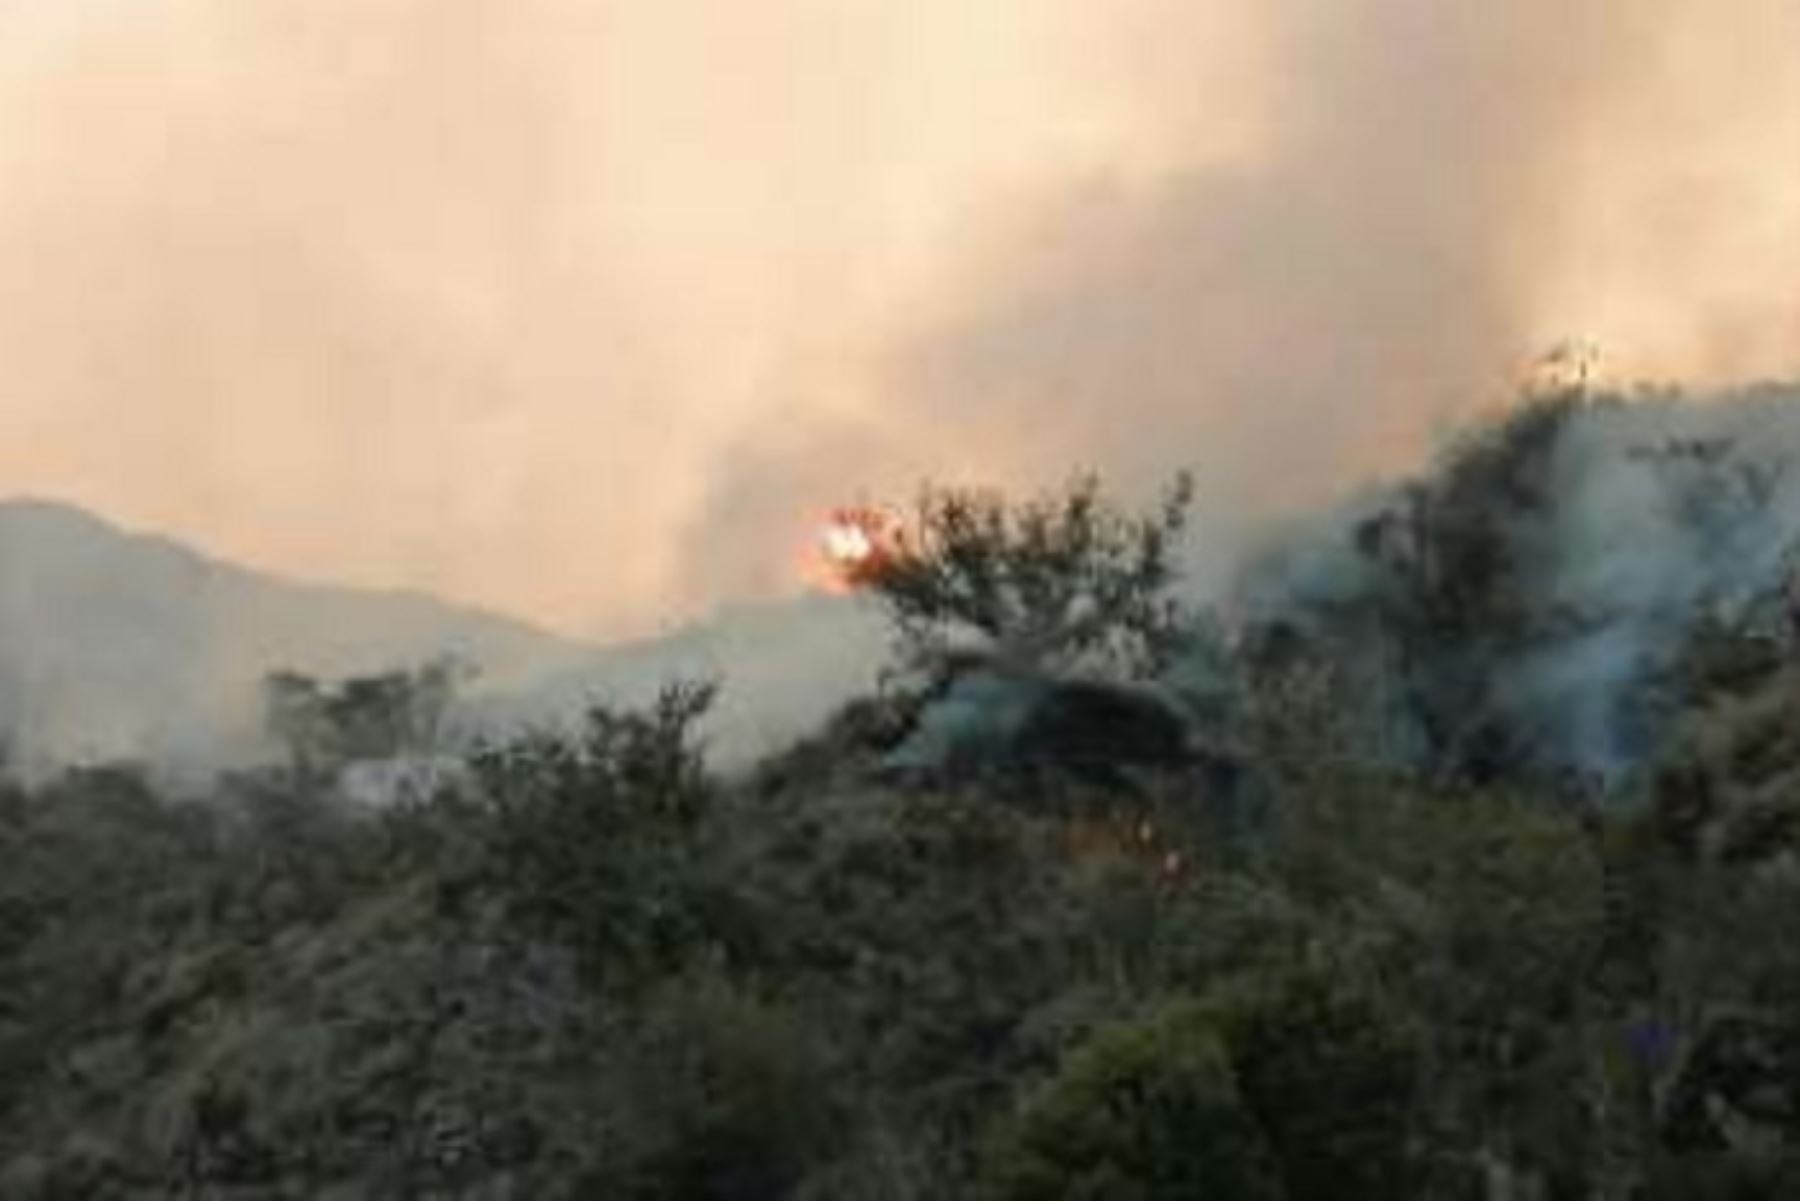 Personal del Cuerpo General de Bomberos Voluntarios del Perú, autoridades locales y pobladores trata de extinguir el incendio forestal que se registra en la región de Cusco y que ha destruido hasta el momento.25 hectáreas de cobertura natural en las comunidades de Sunchubamba, Jajahuana y Pastogrande.